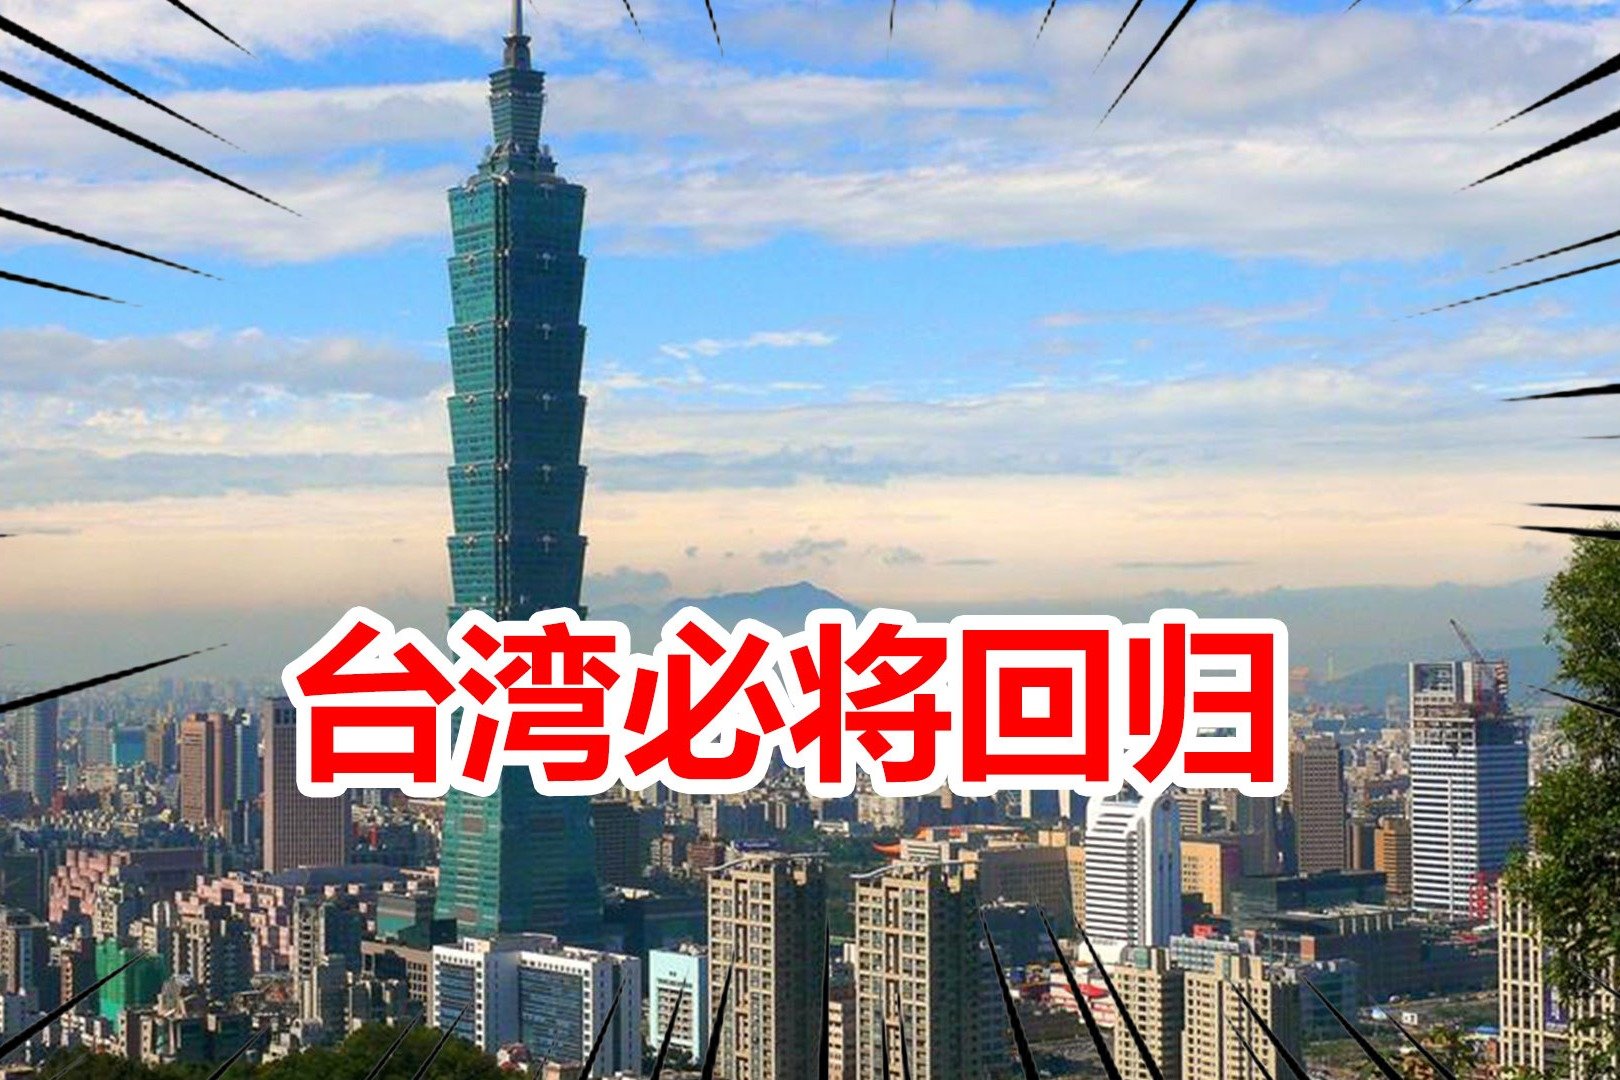 欢迎来到台湾 欢迎光临台湾孤邮 向量例证. 插画 包括有 钞票, 削皮器, 地点, 按钮, 荒地, 旅行 - 165052894